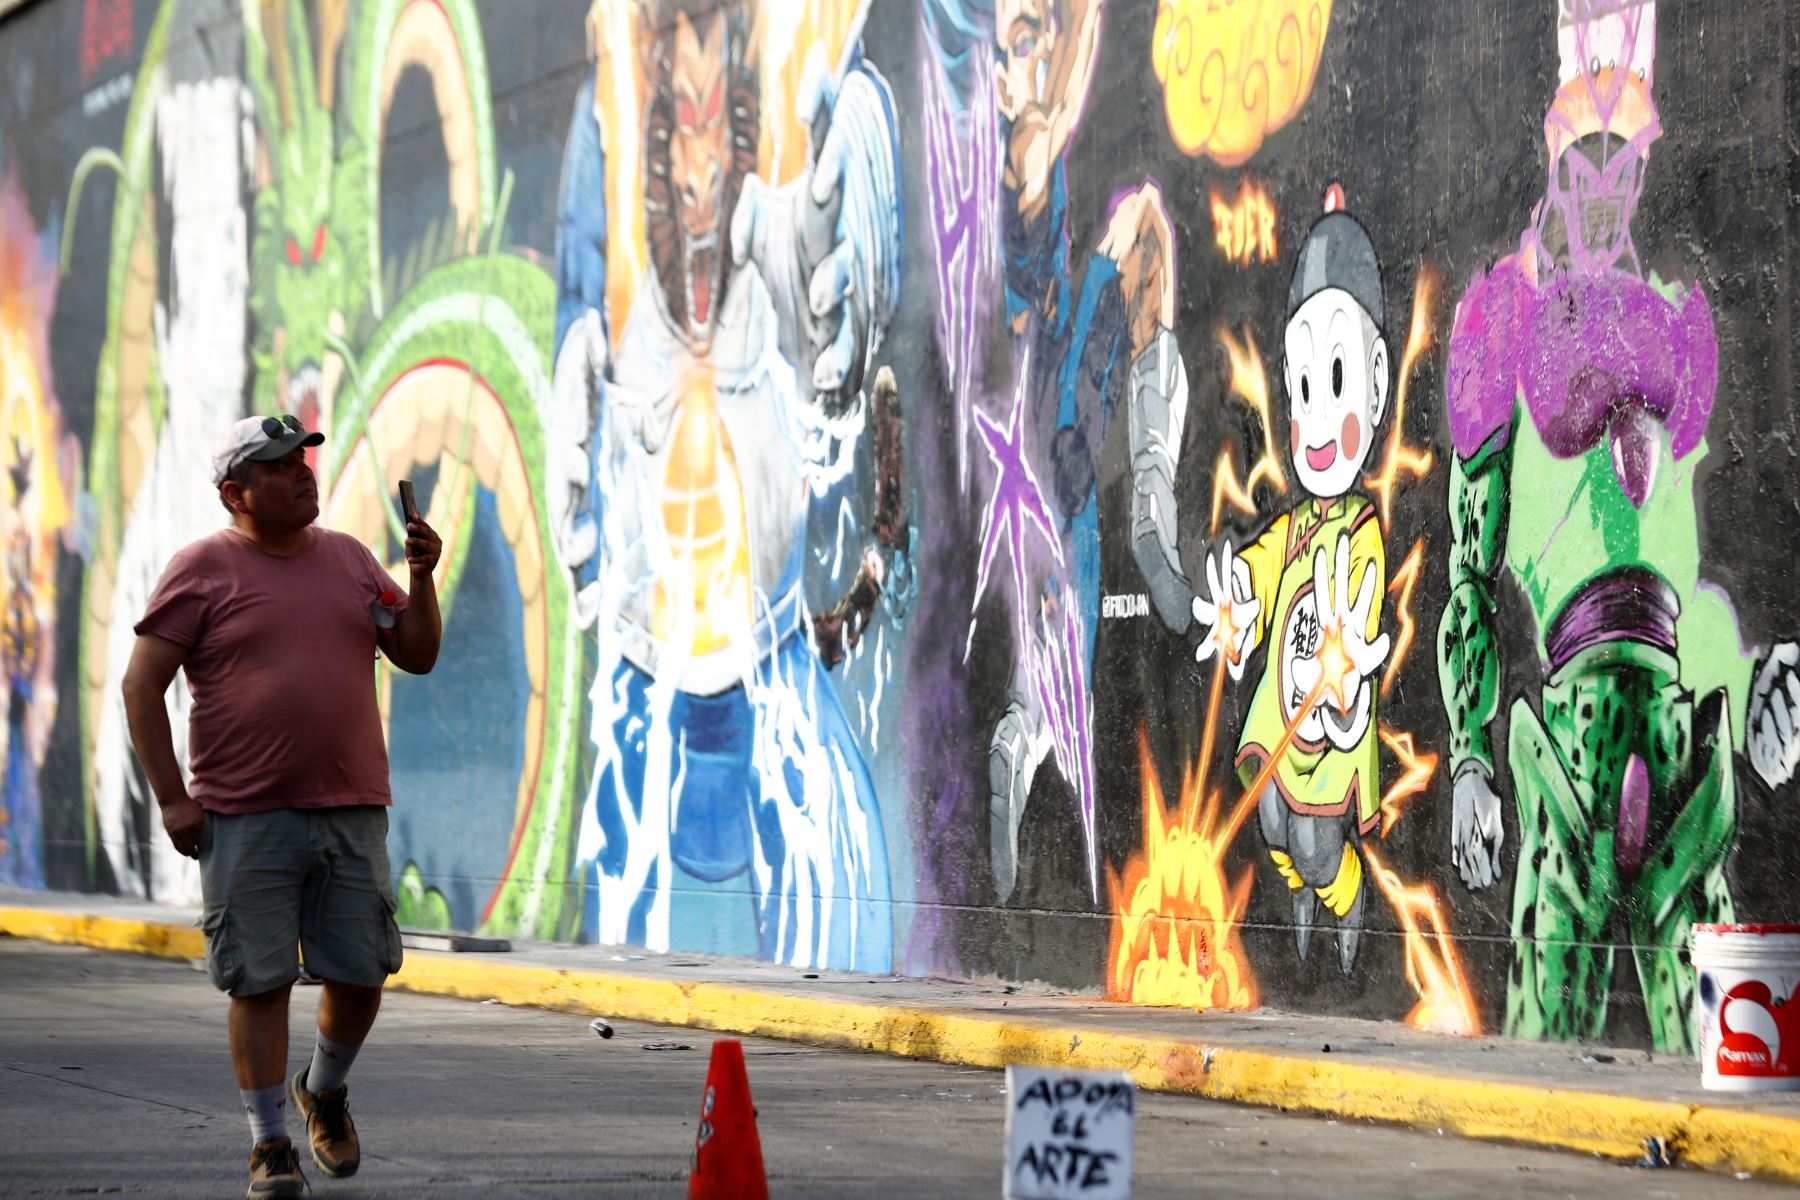 Artistas urbanos de diversos distritos de Lima le rinden homenaje al fallecido Akira Toriyama, creador de la saga de Dragon Ball, con un inmenso mural artístico en Paseo de la República, en el distrito de La Victoria, inspirado en sus principales creaciones para el anime y el manga. Foto: ANDINA/Daniel Bracamonte